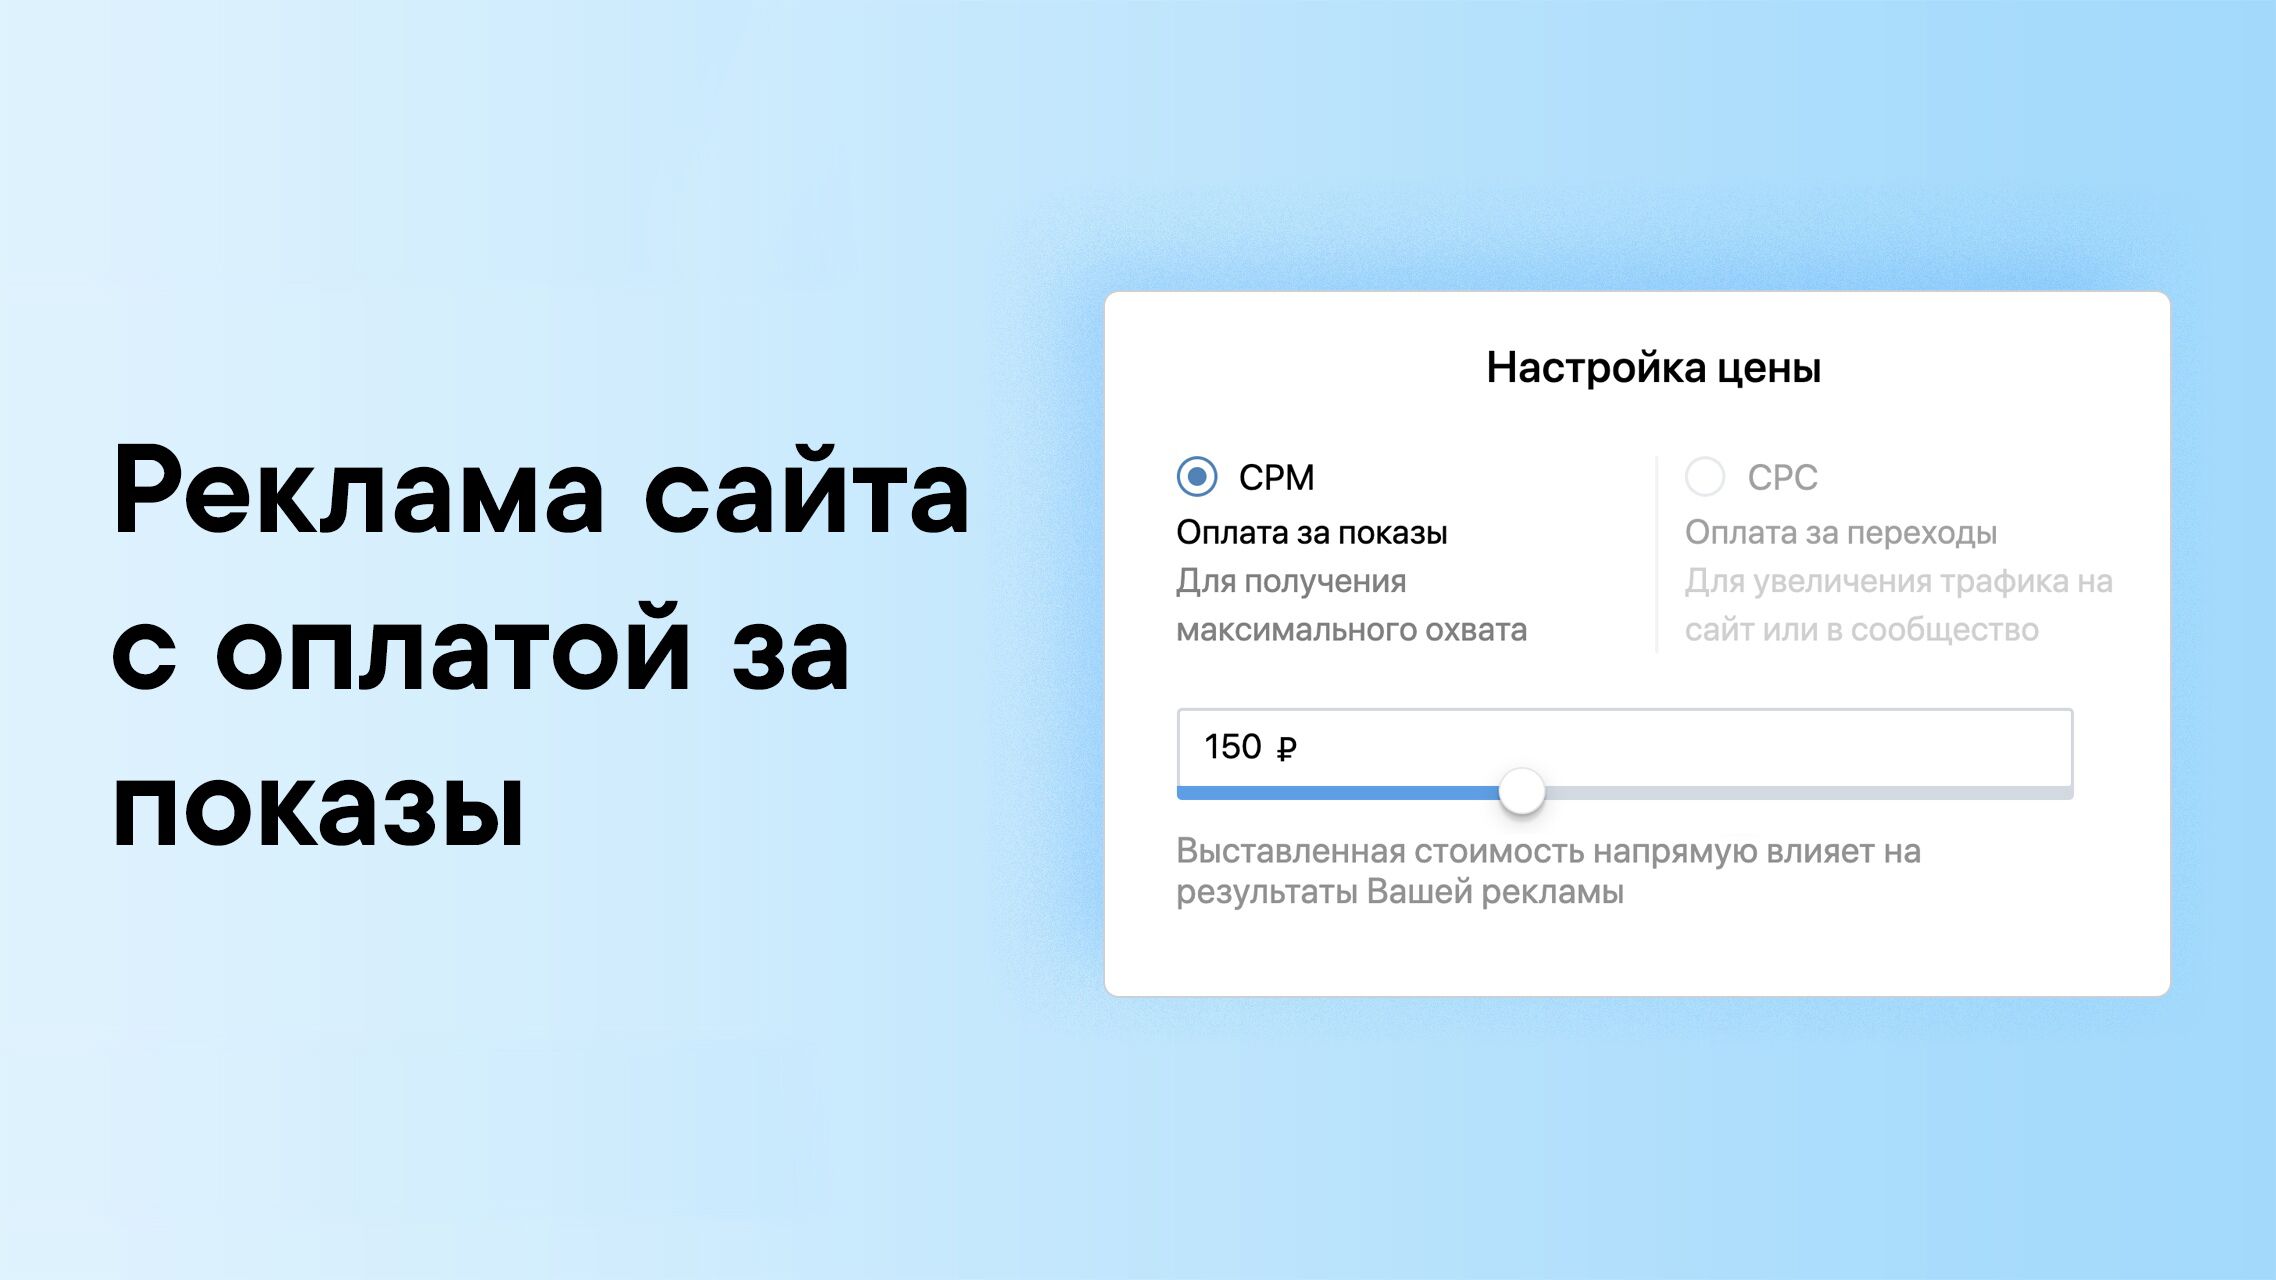 Оплата за показы (CPM) для формата «Реклама сайта» во ВКонтакте